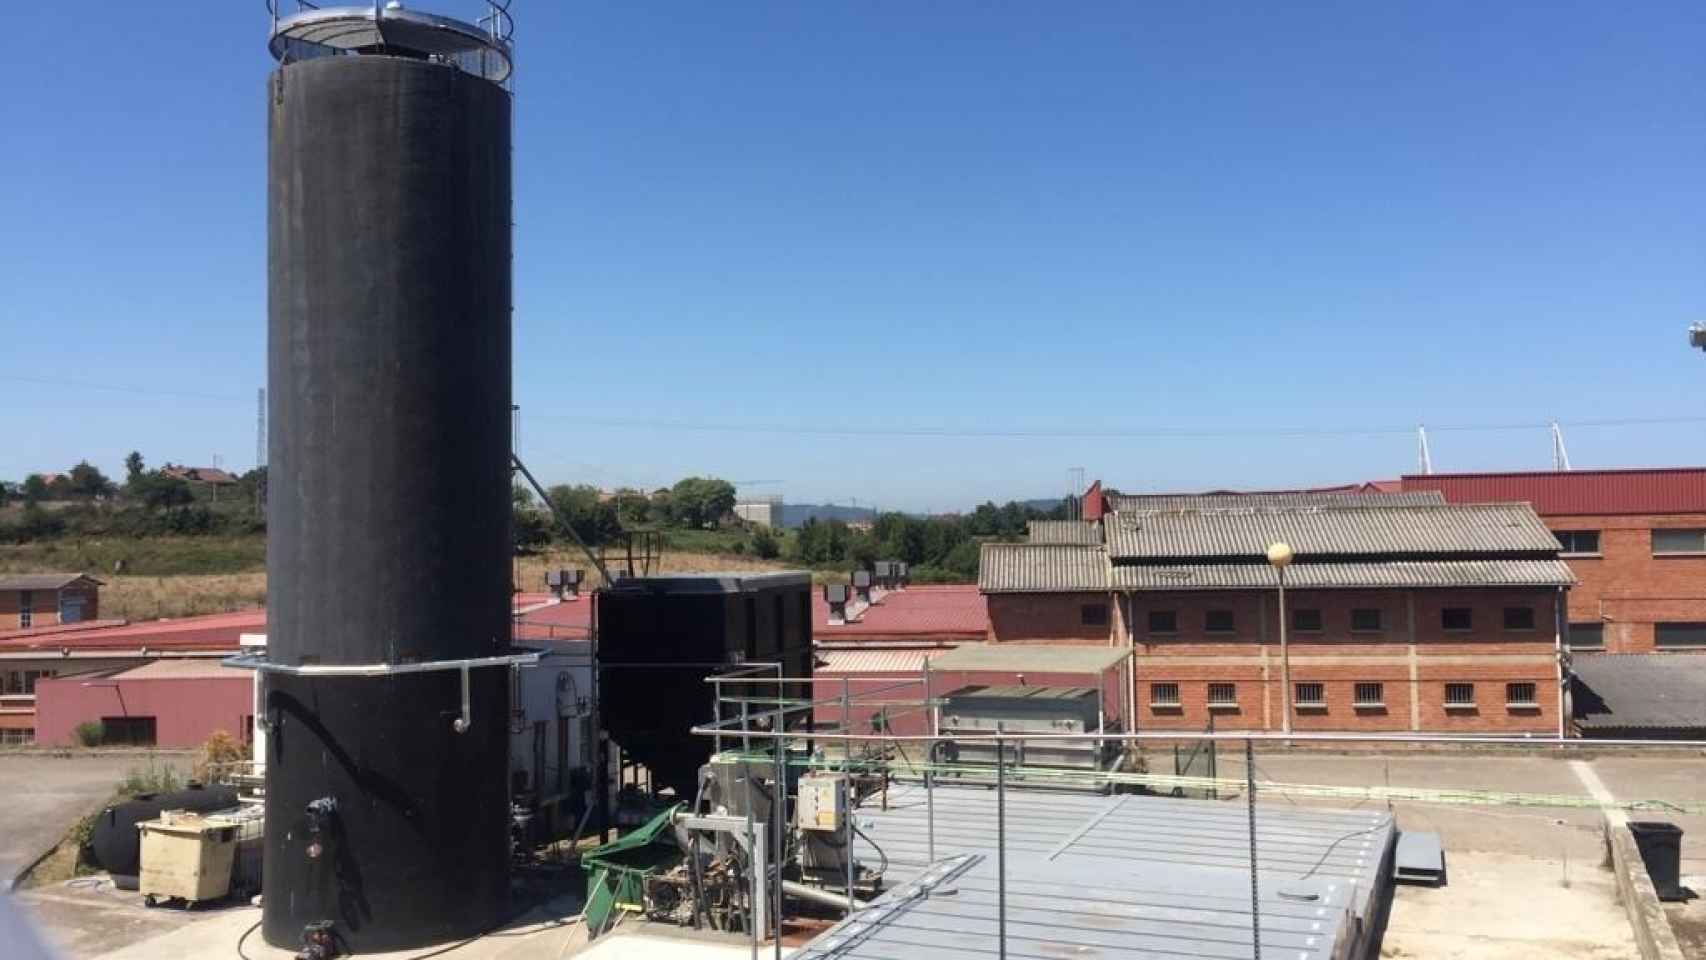 Economía circular en el matadero de Gijón: biogás para depurar residuos y generar calor